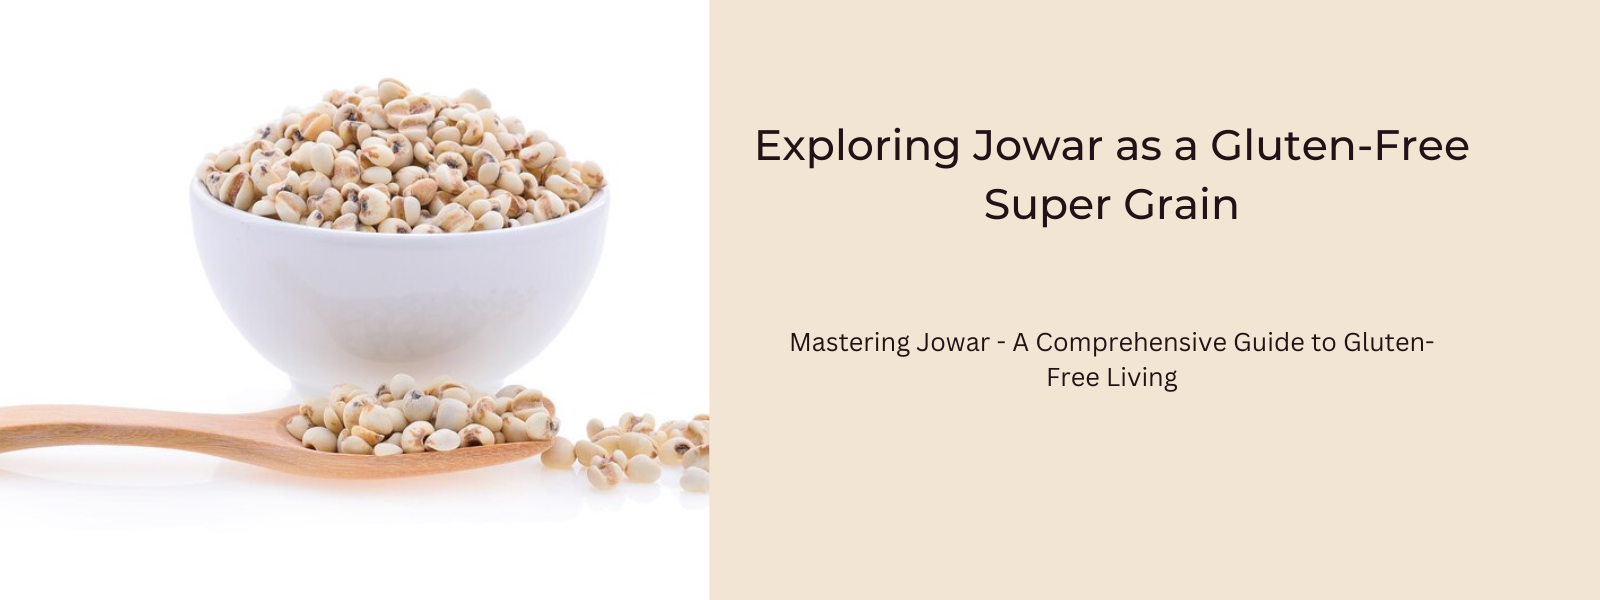 Exploring Jowar as a Gluten-Free Super Grain